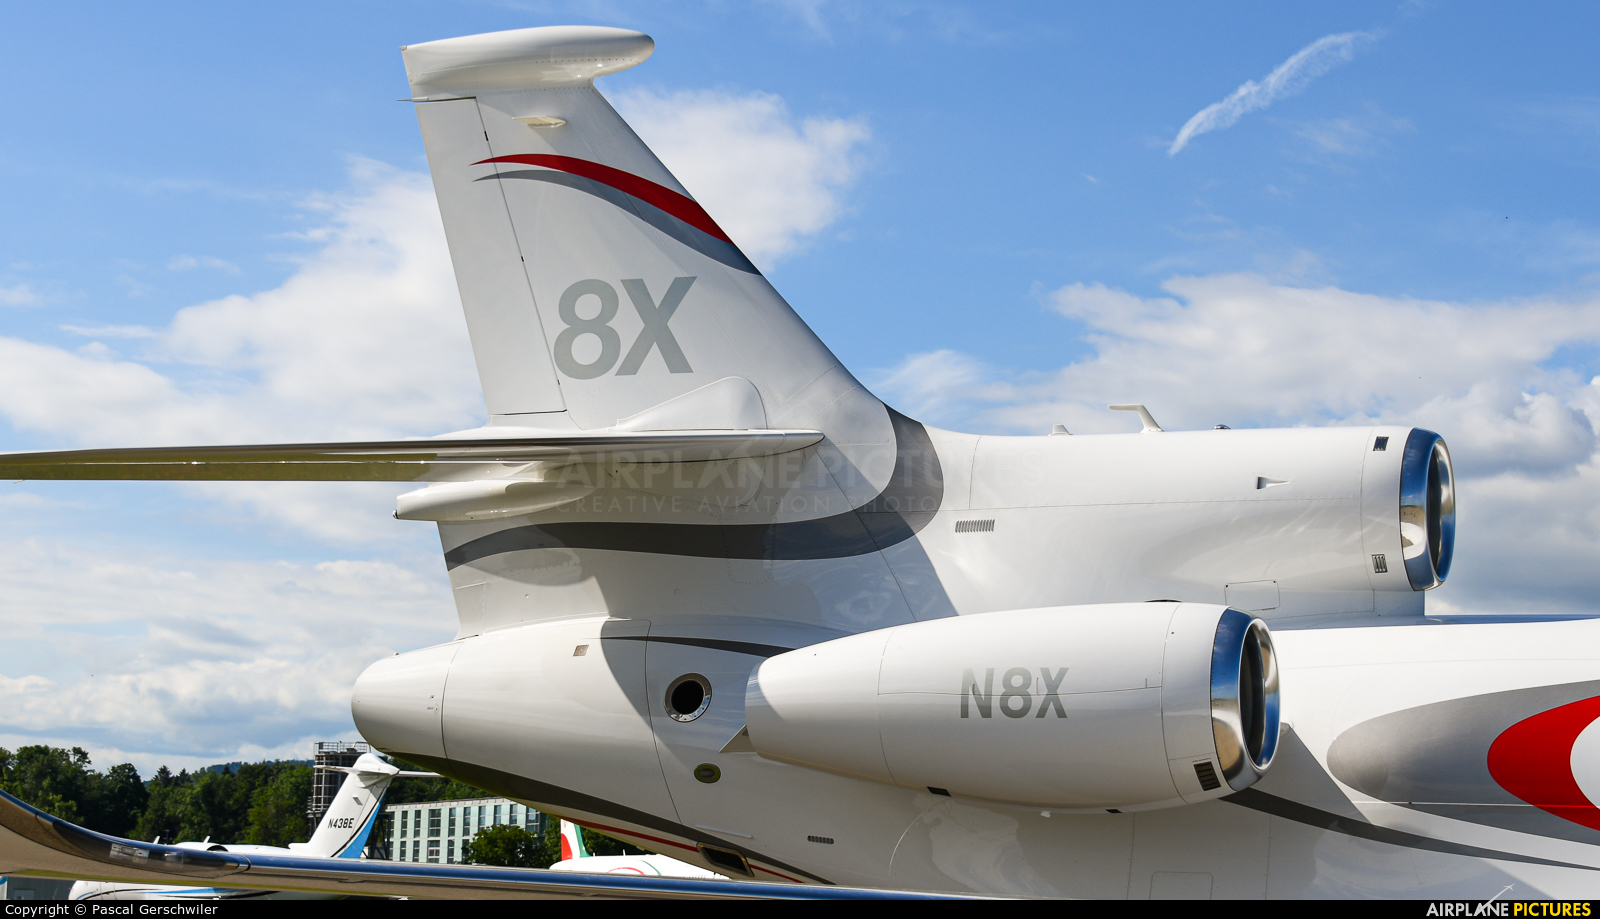 Dassault Aviation N8X aircraft at Zurich